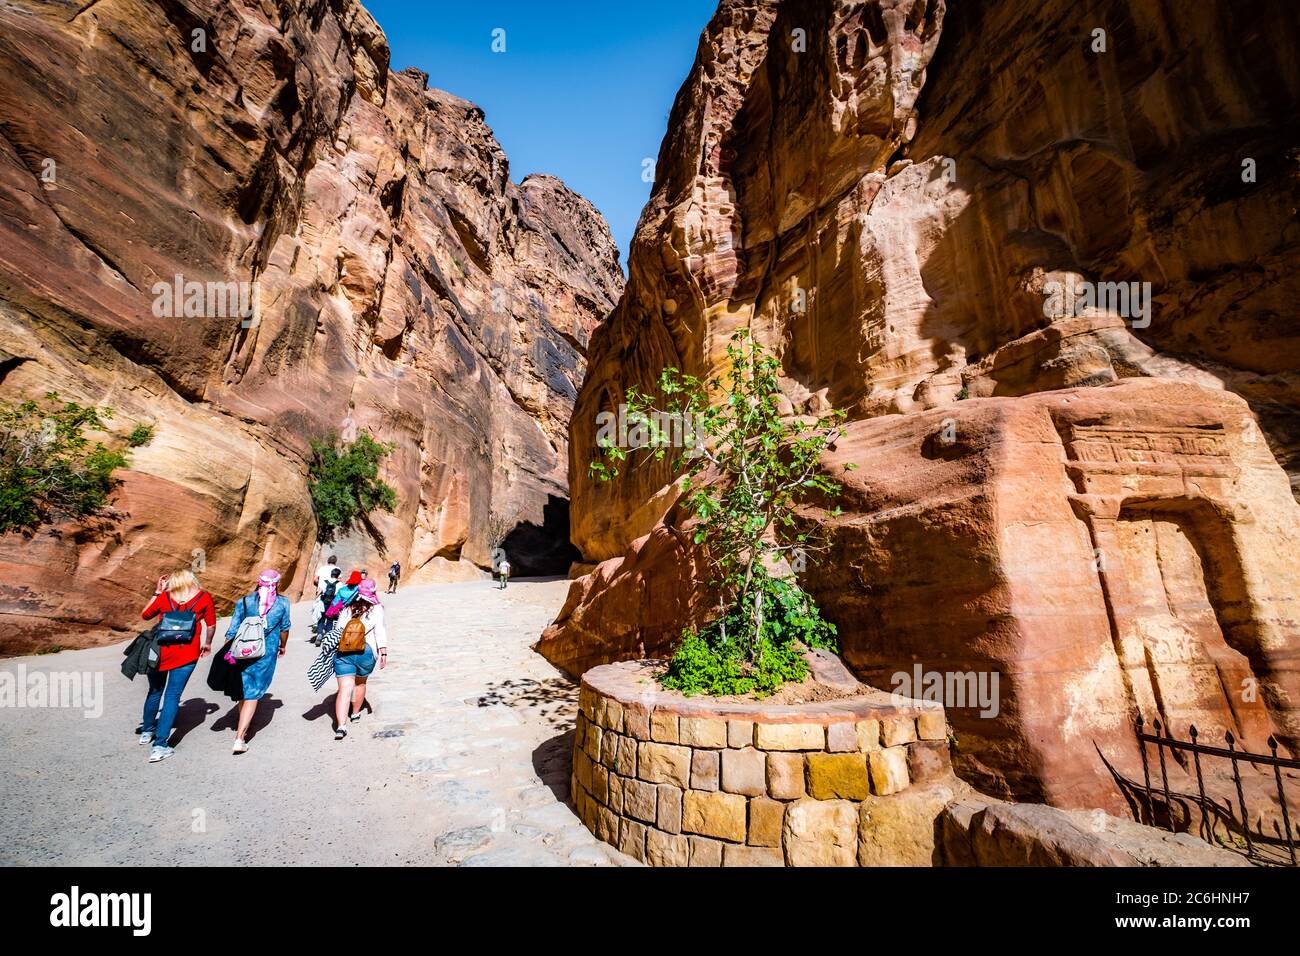 Paysage frais et vert sur la falaise sculptée de roche de grès à Petra, en Jordanie Banque D'Images